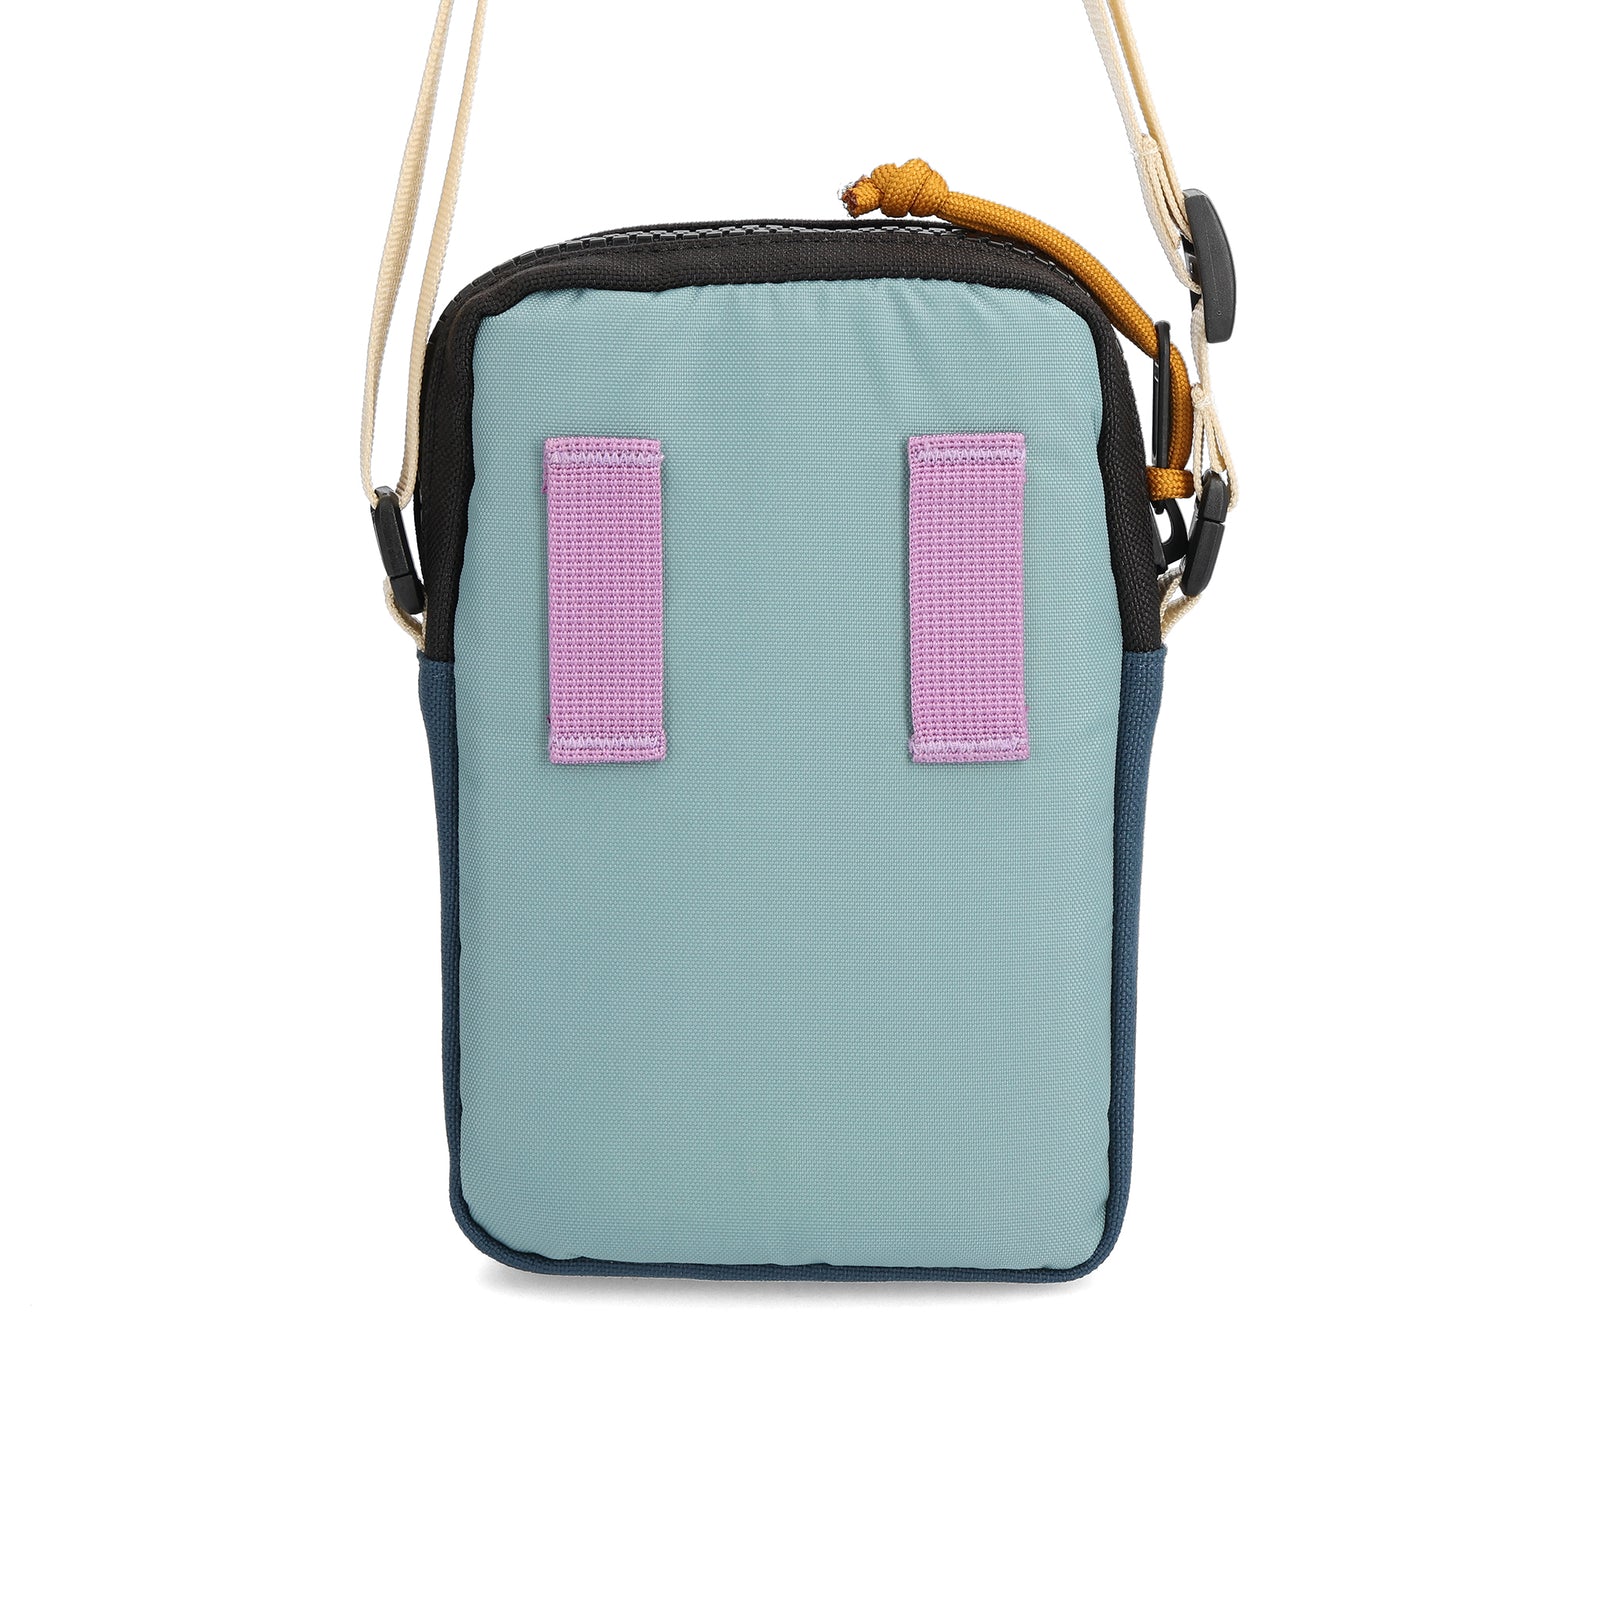 Back View of Topo Designs Mini Shoulder Bag in "Pond Blue / Sage"